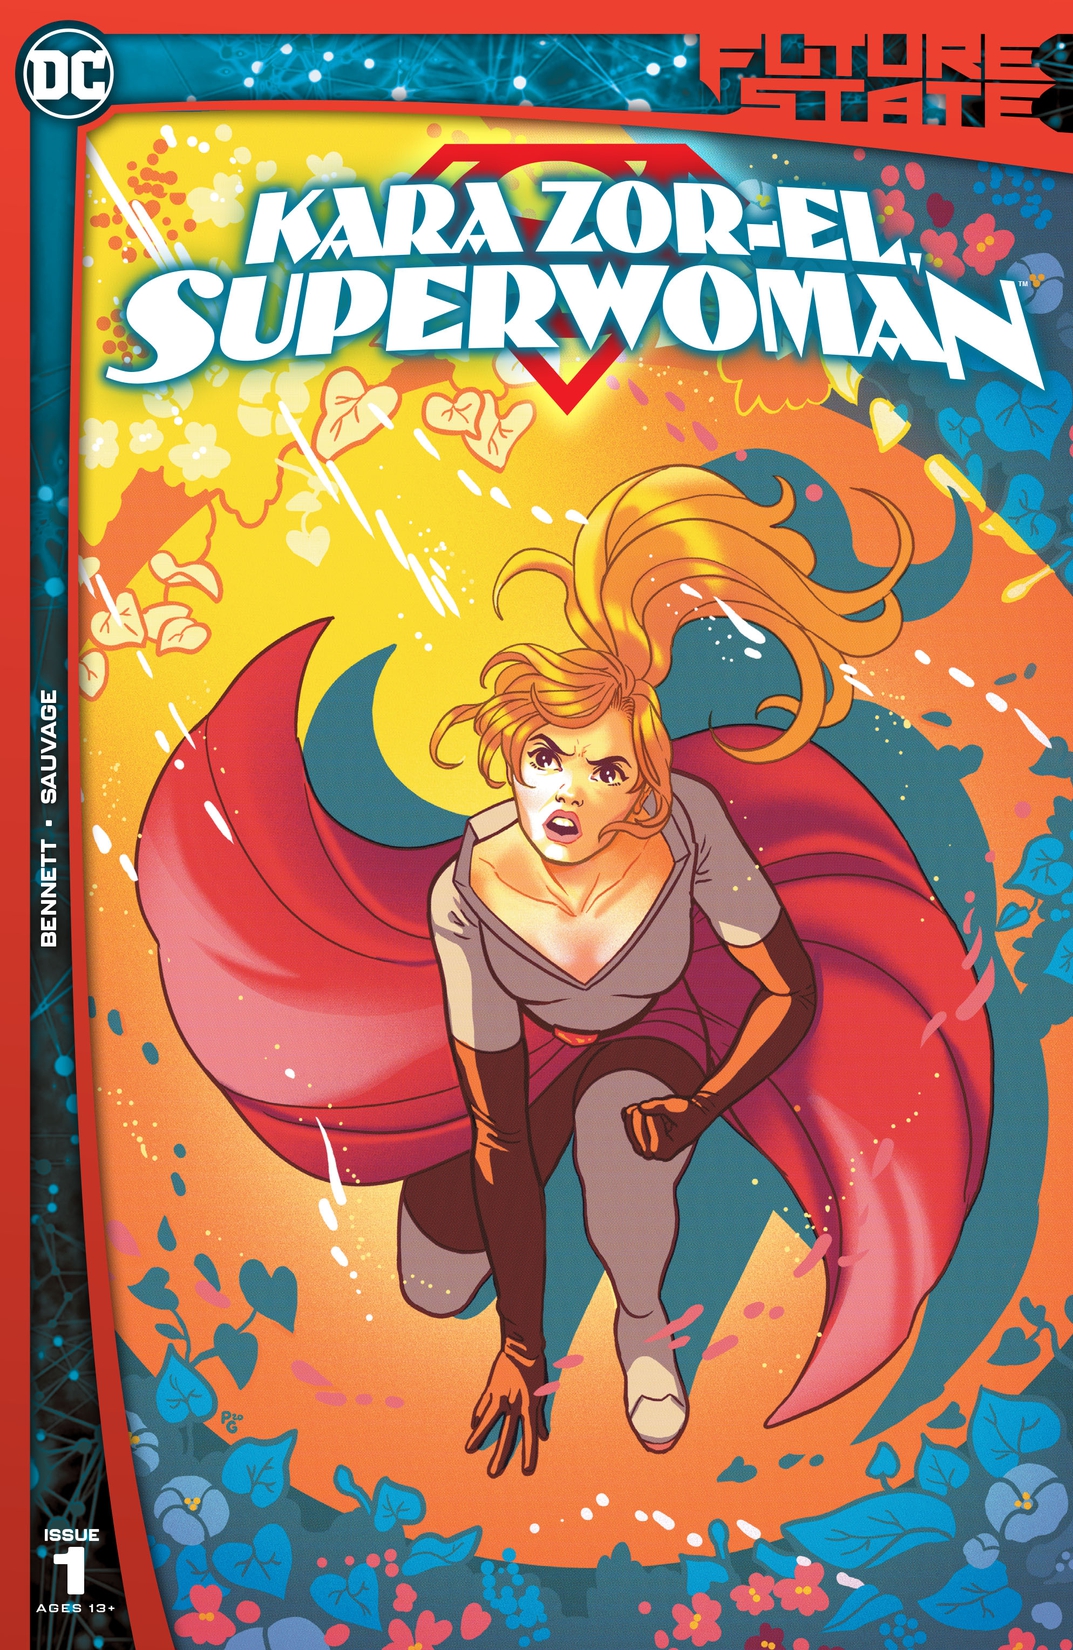 Future State: Kara Zor-El, Superwoman #1 preview images